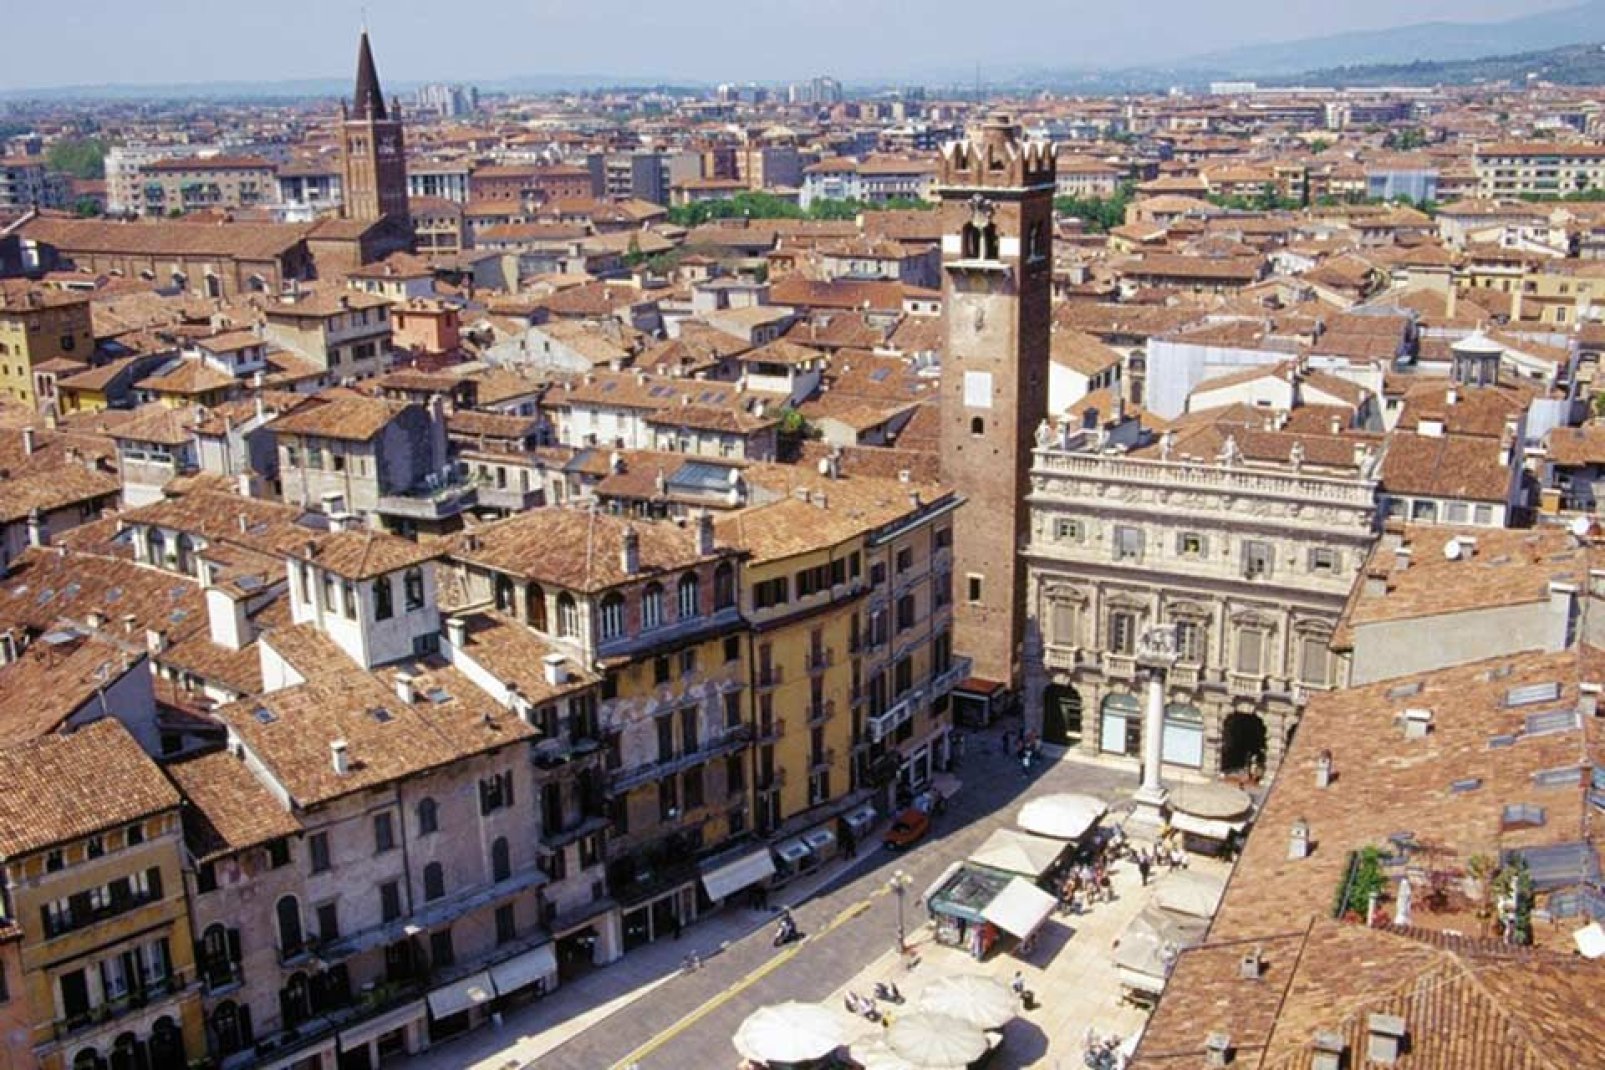 Piazza delle Erbe è la piazza più antica di Verona. Qui sono collocati la fontana, la colonna marmorea dove sorge il Leone di S.Marco e il "Tribunale".